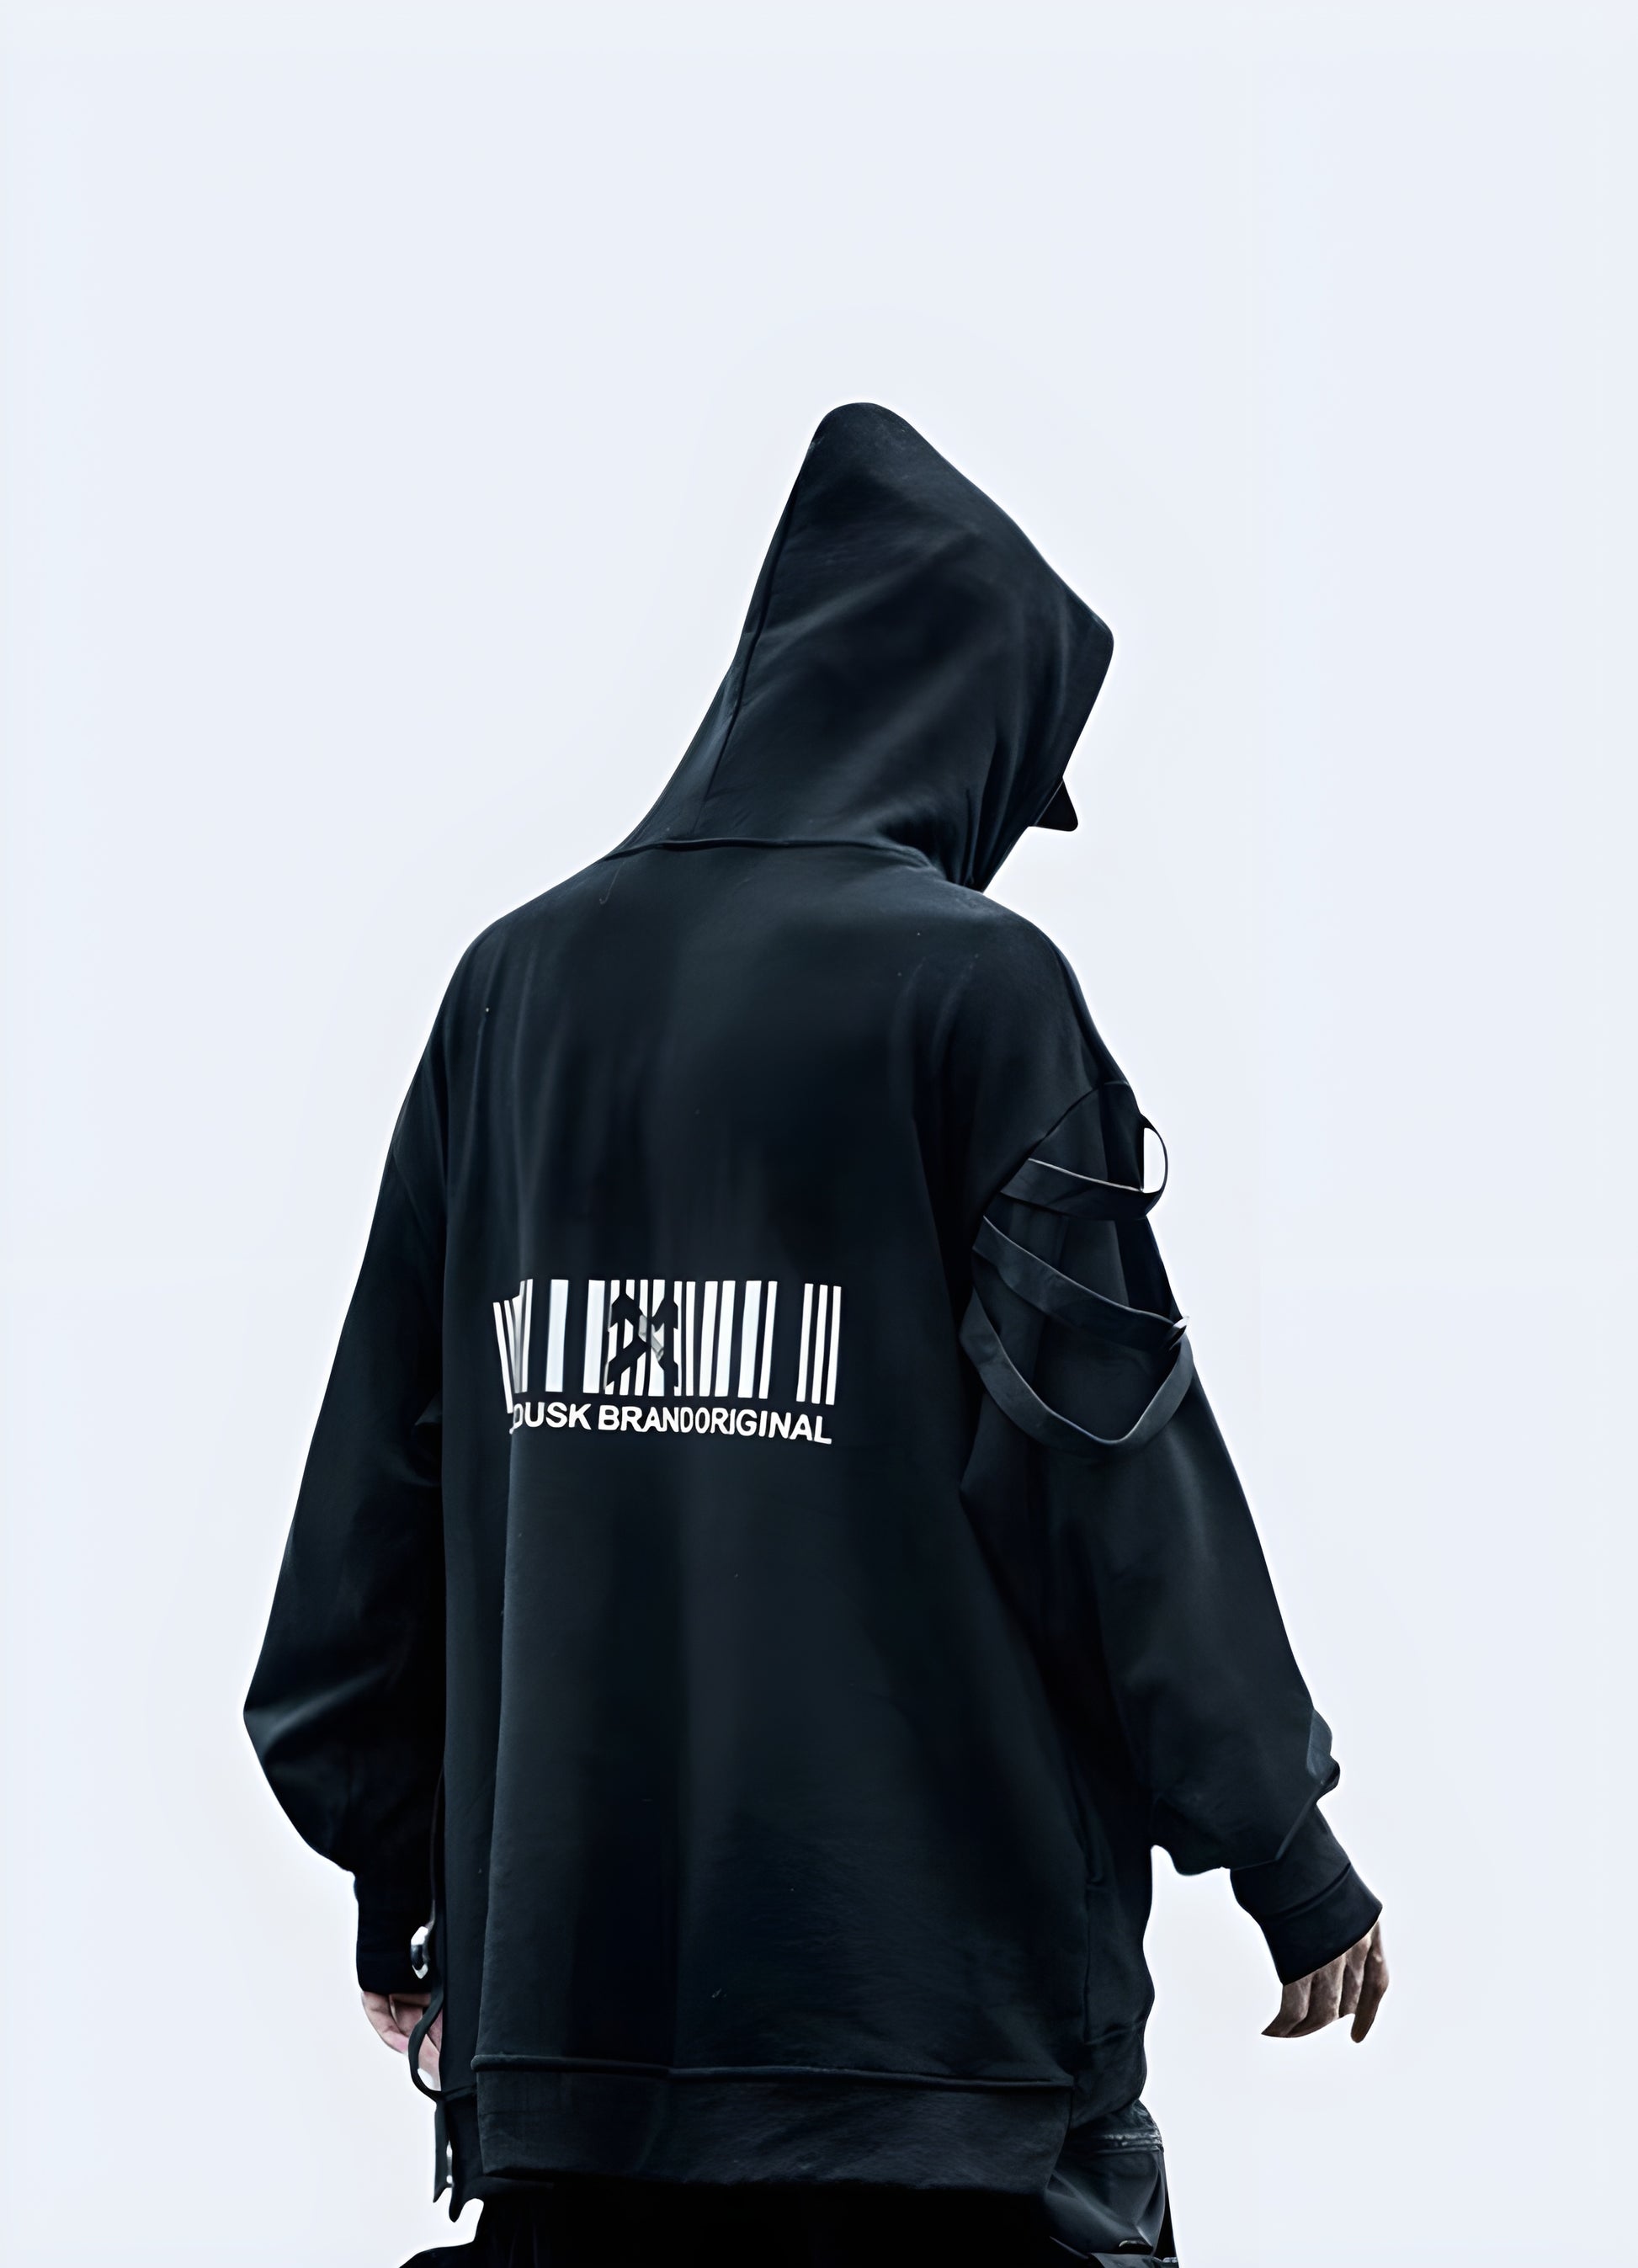 Urban style,  warcore, cyber tech clothing black techwear hoodie.